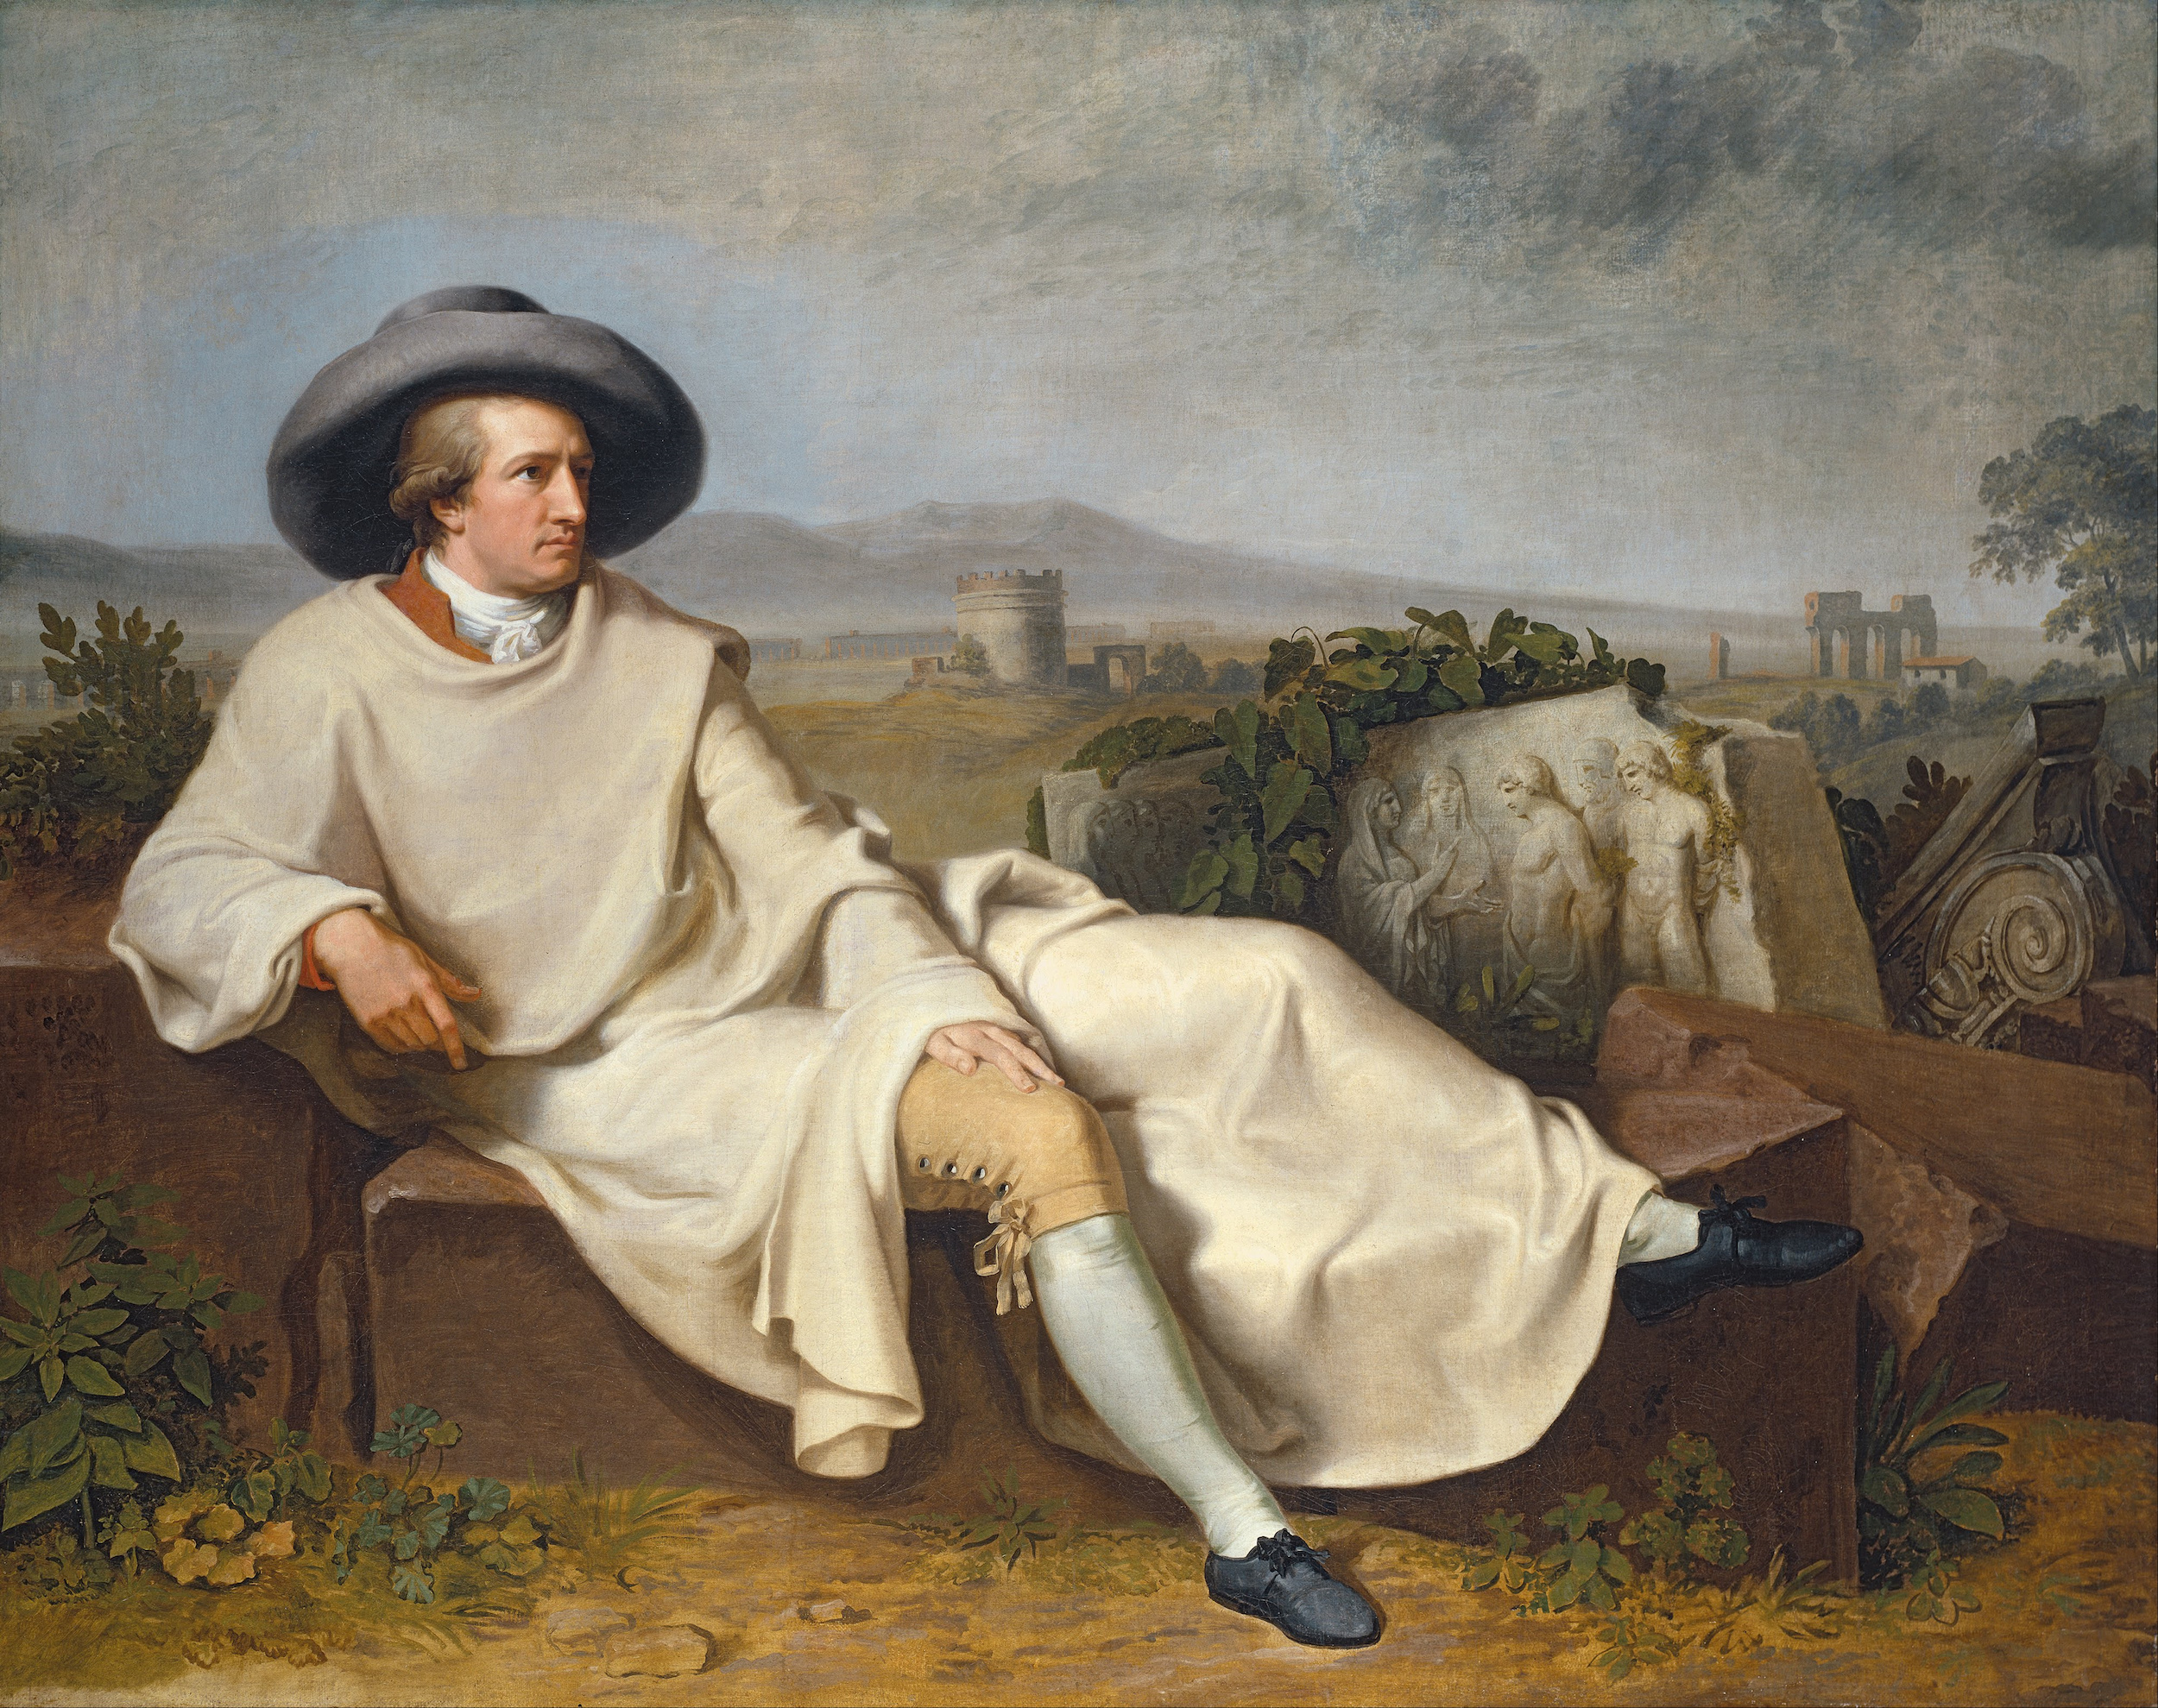 Goethe in the Roman Campagna by Johann Heinrich Wilhelm Tischbein - 1787 - 164 × 206 cm Städel Museum